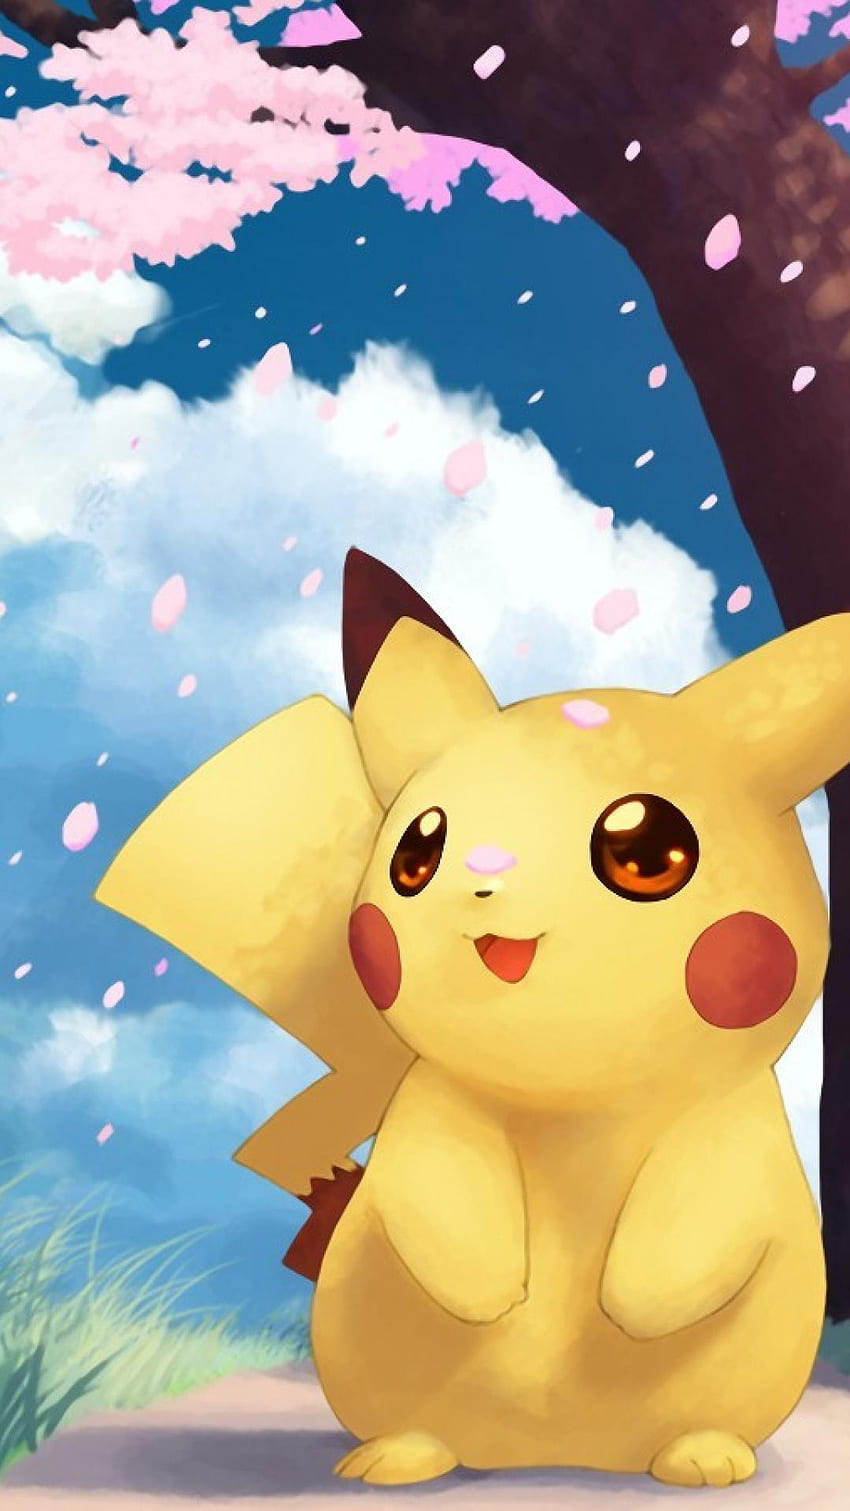 Arte de de Pokemon iPhone 6, teléfono Pikachu fondo de pantalla del teléfono